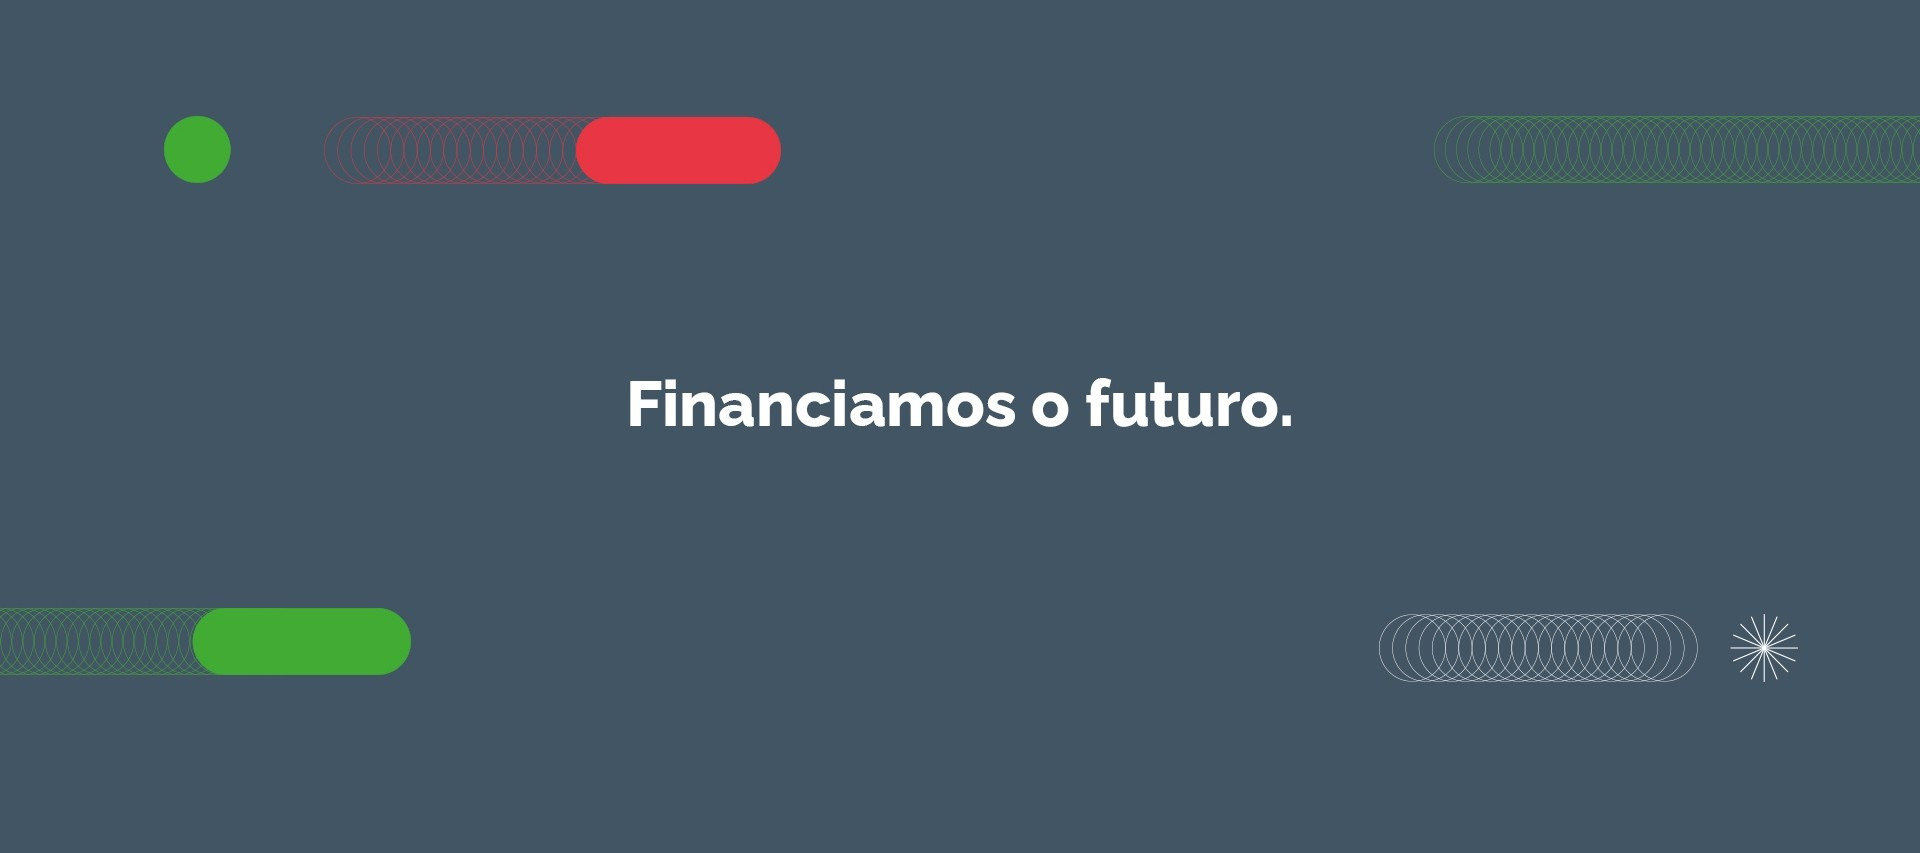 Banco Português de Fomento - Detalhe 2 -1 - LOBA.cx